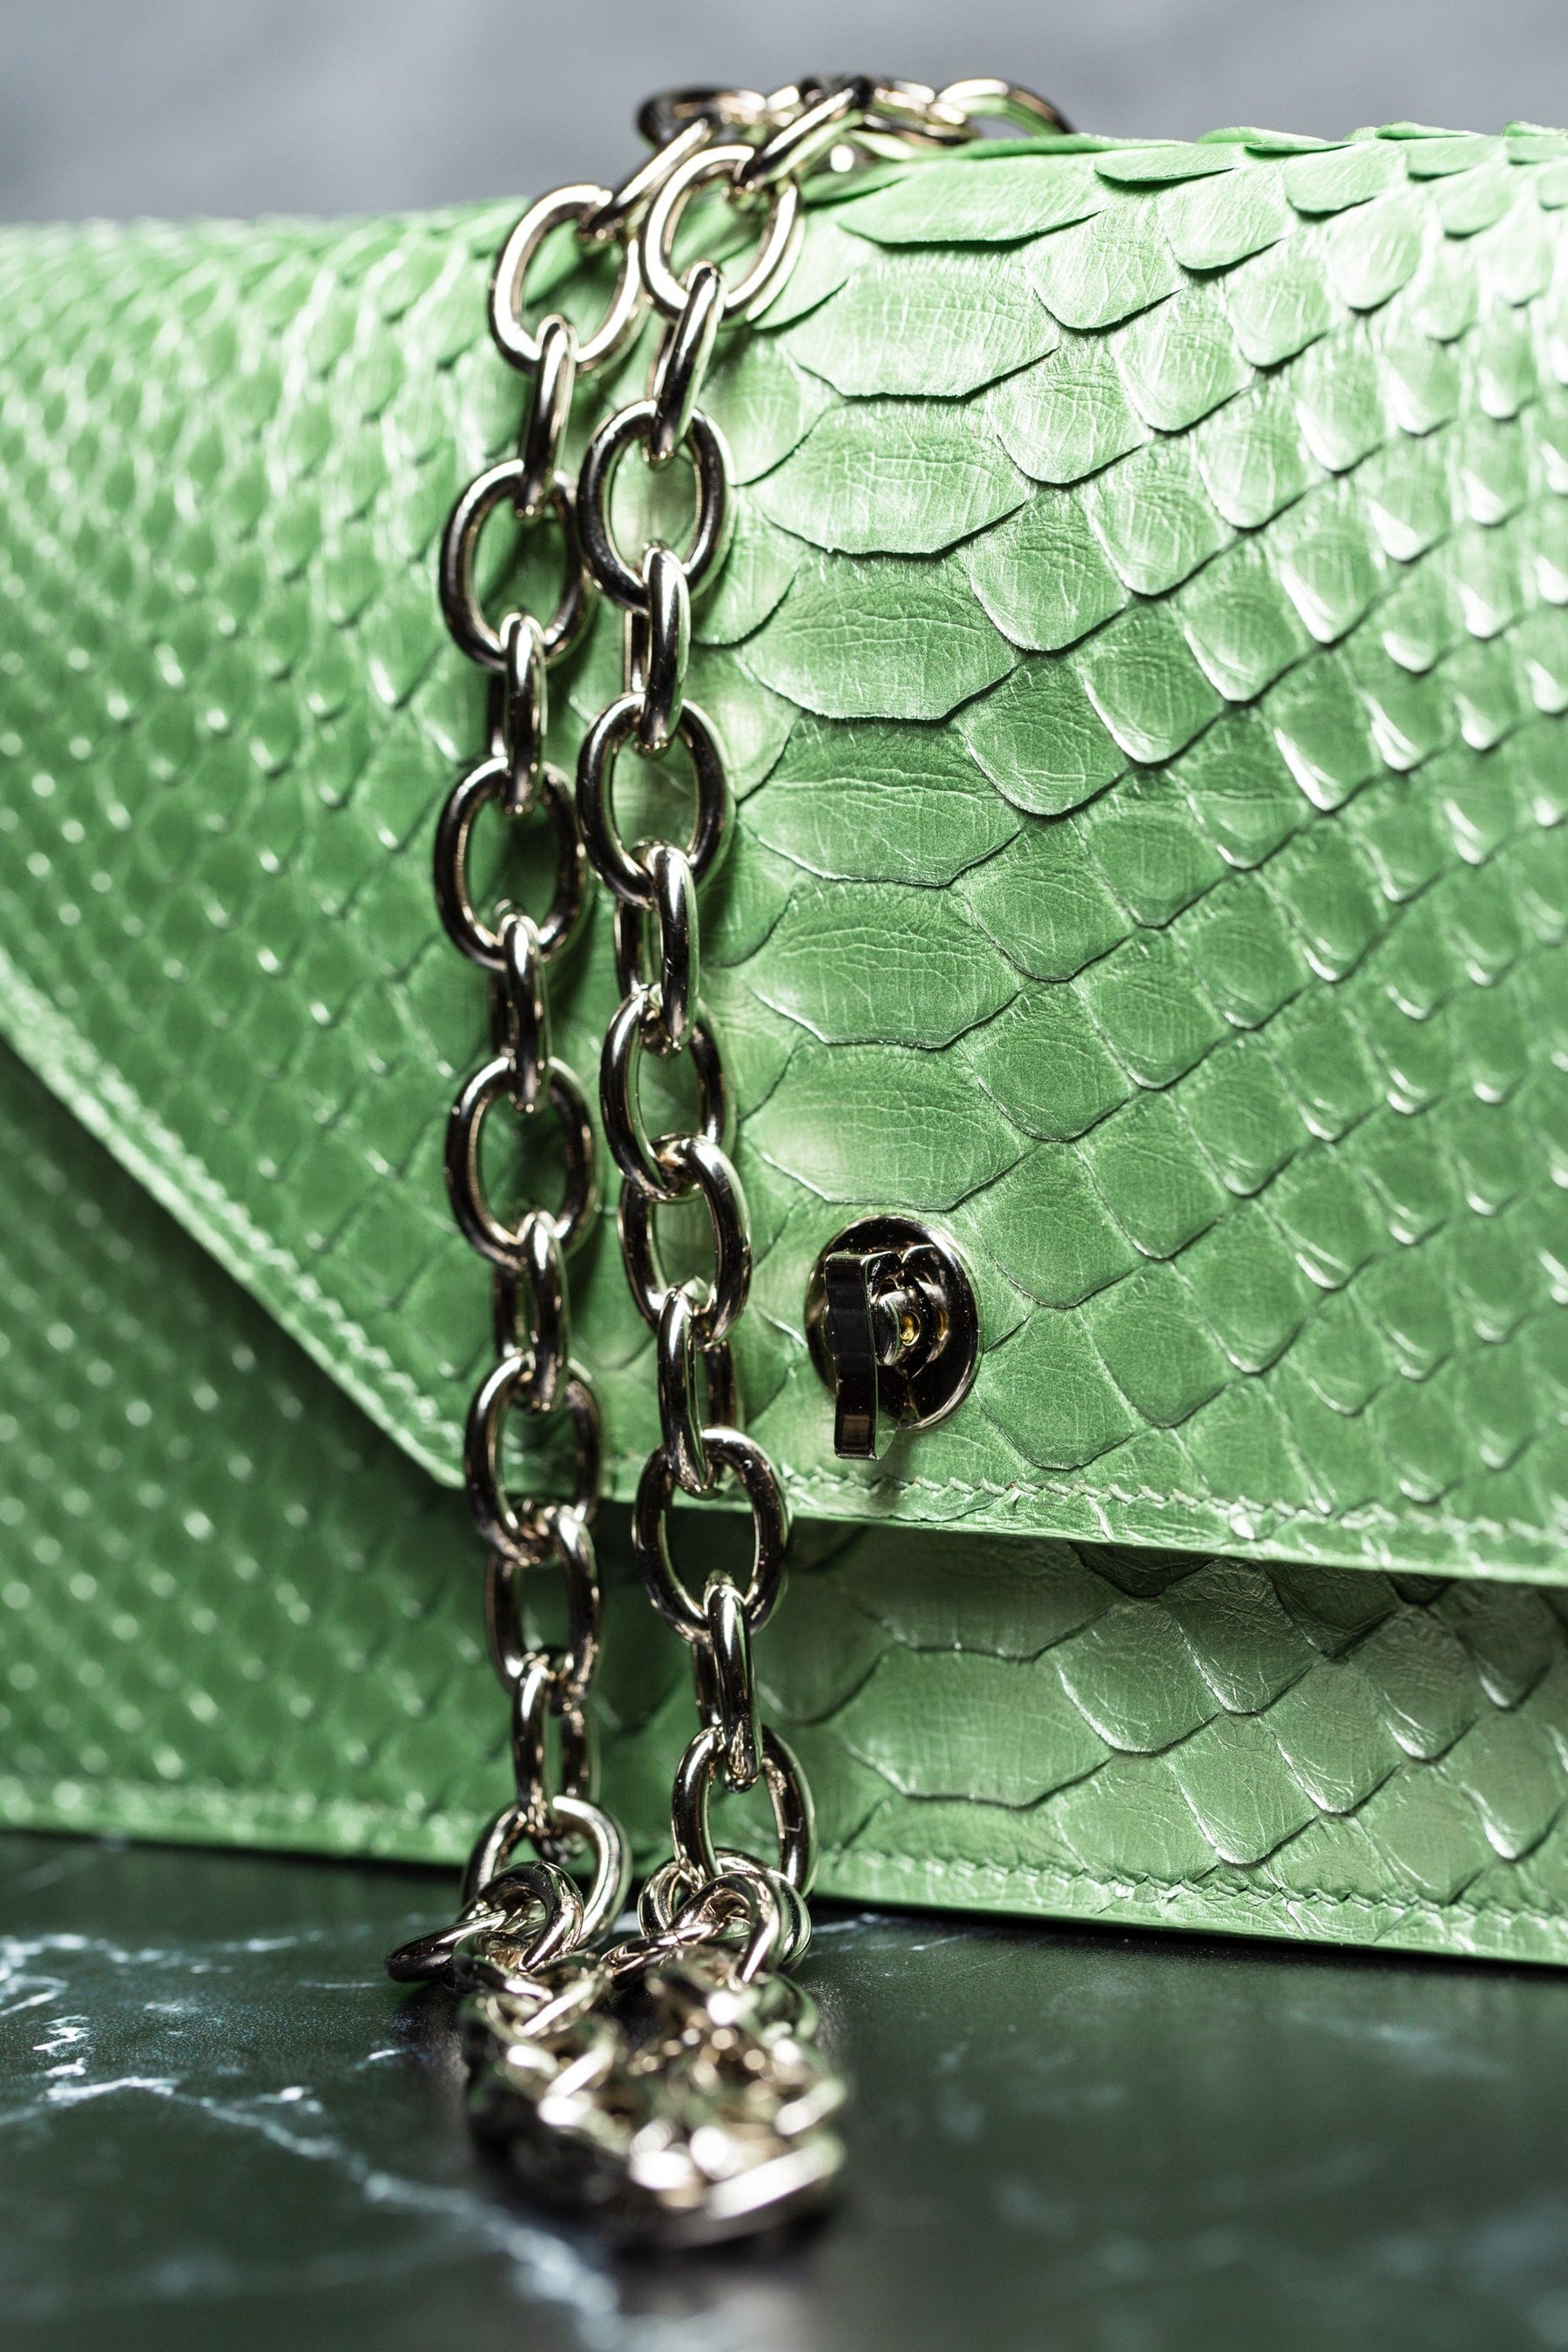 Tamagini Leather The Copley Clutch - Metallic Green Python Leather | Tamagini Leather